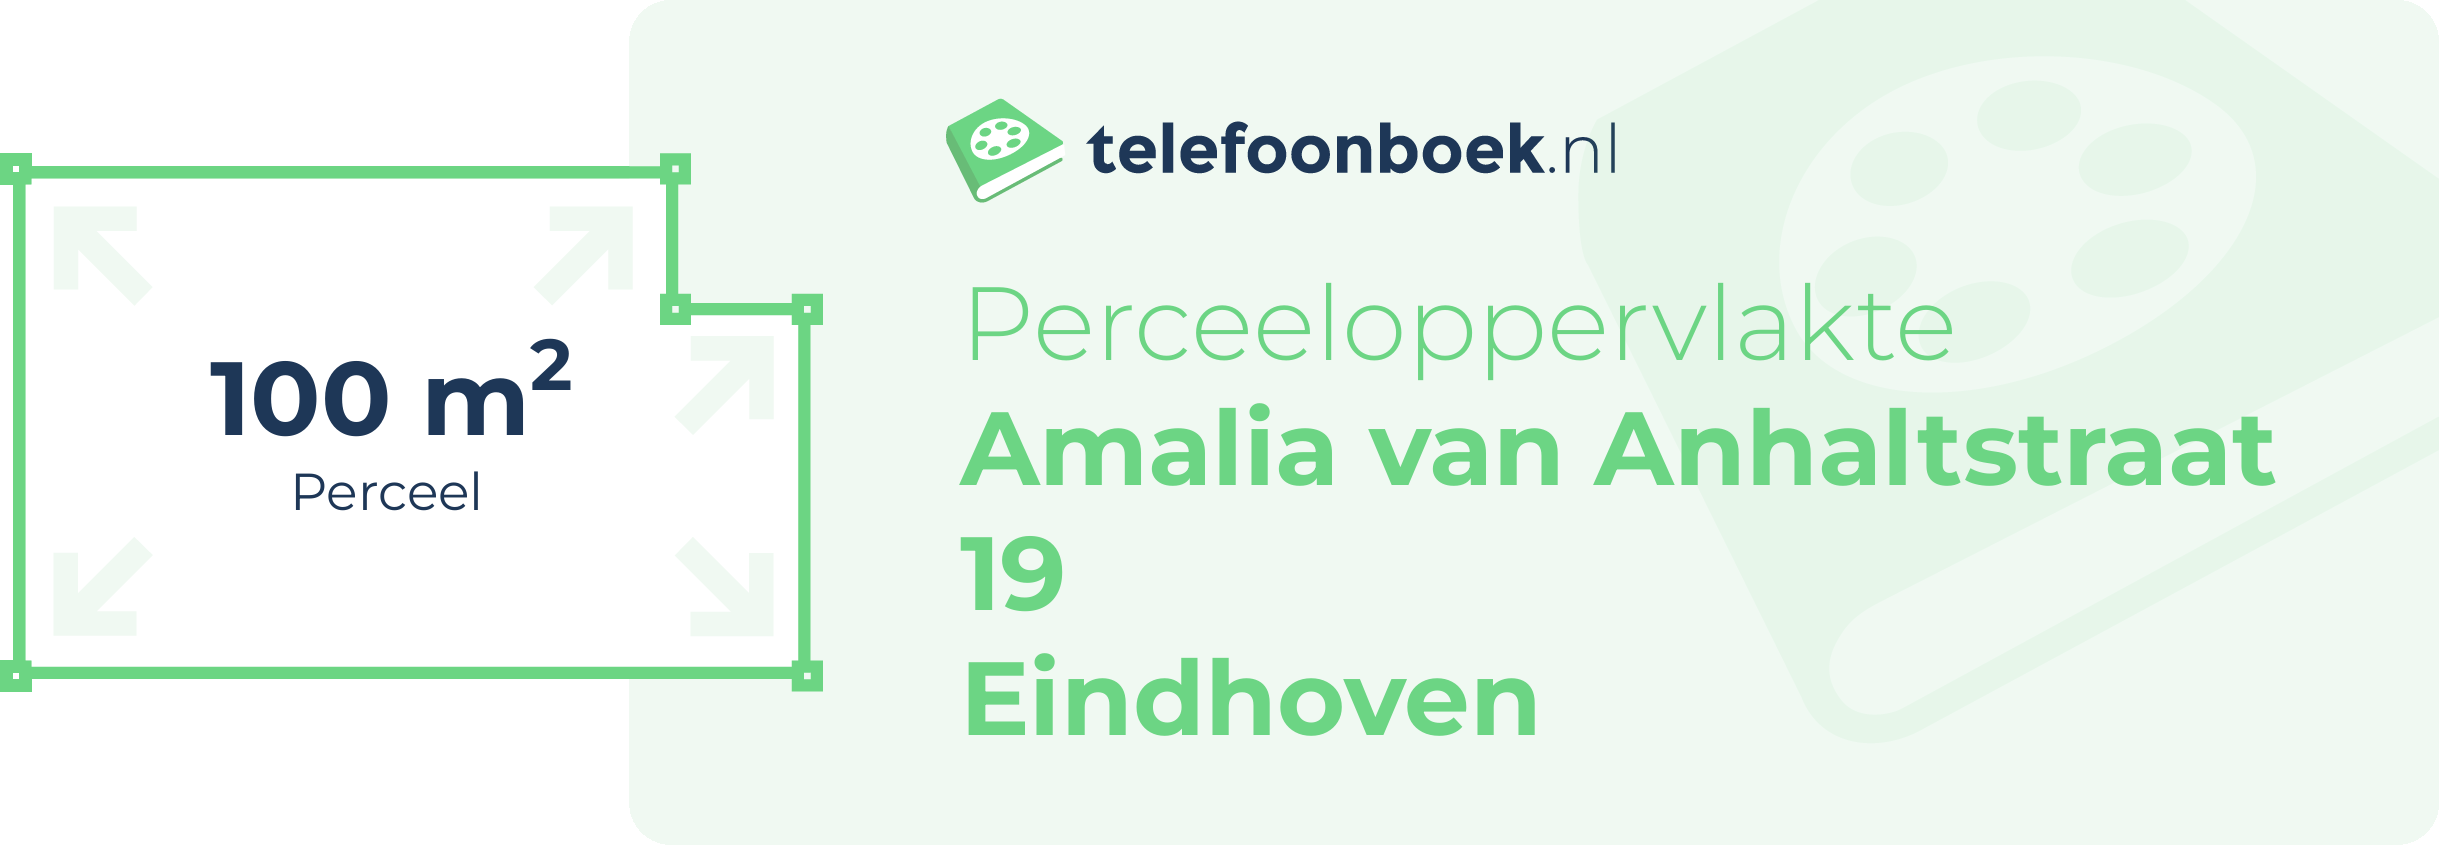 Perceeloppervlakte Amalia Van Anhaltstraat 19 Eindhoven